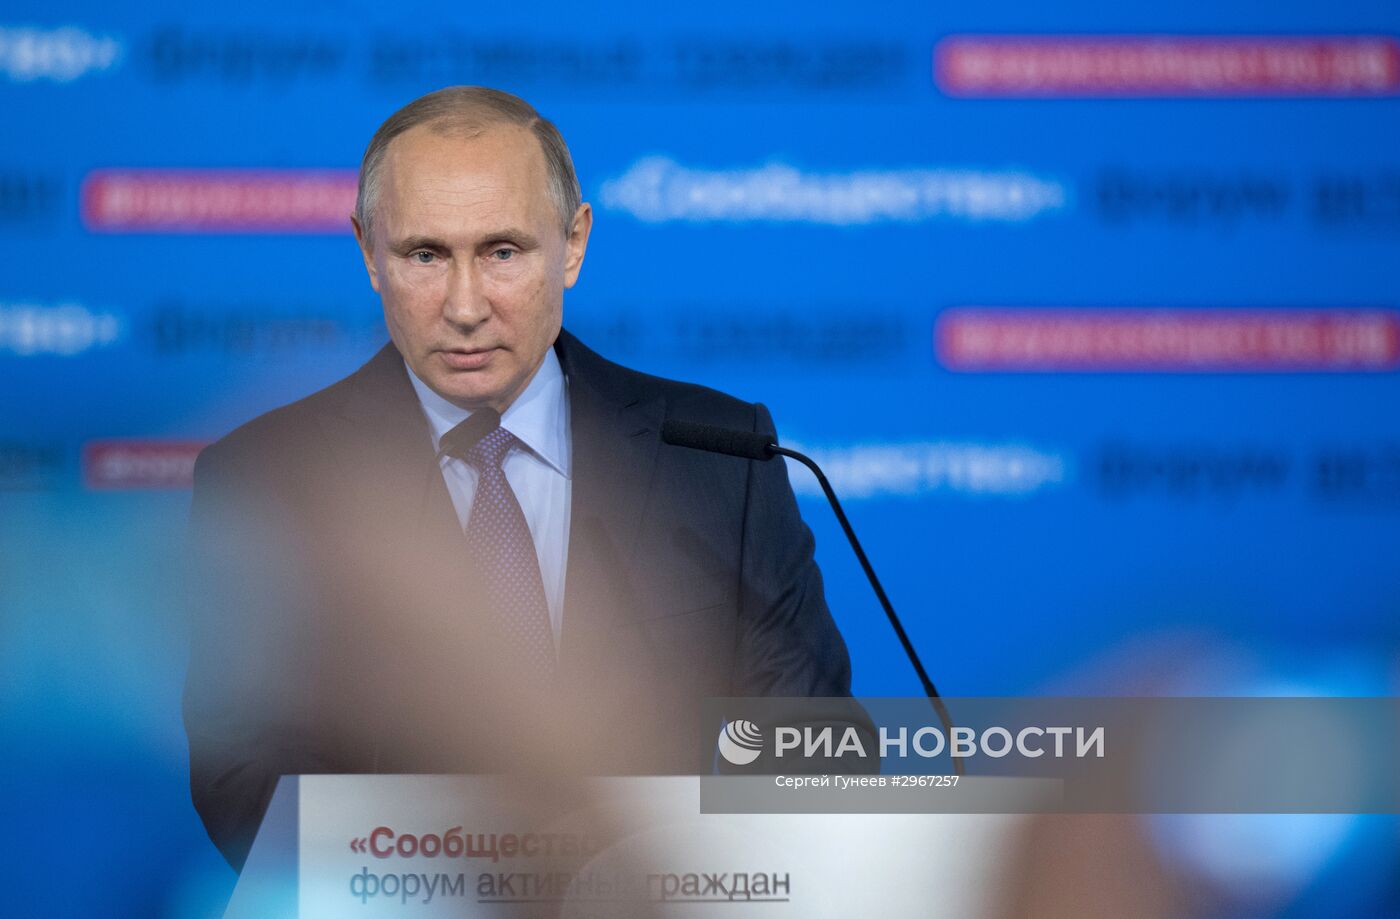 Президент РФ В. Путин принял участие в форуме активных граждан "Сообщество"